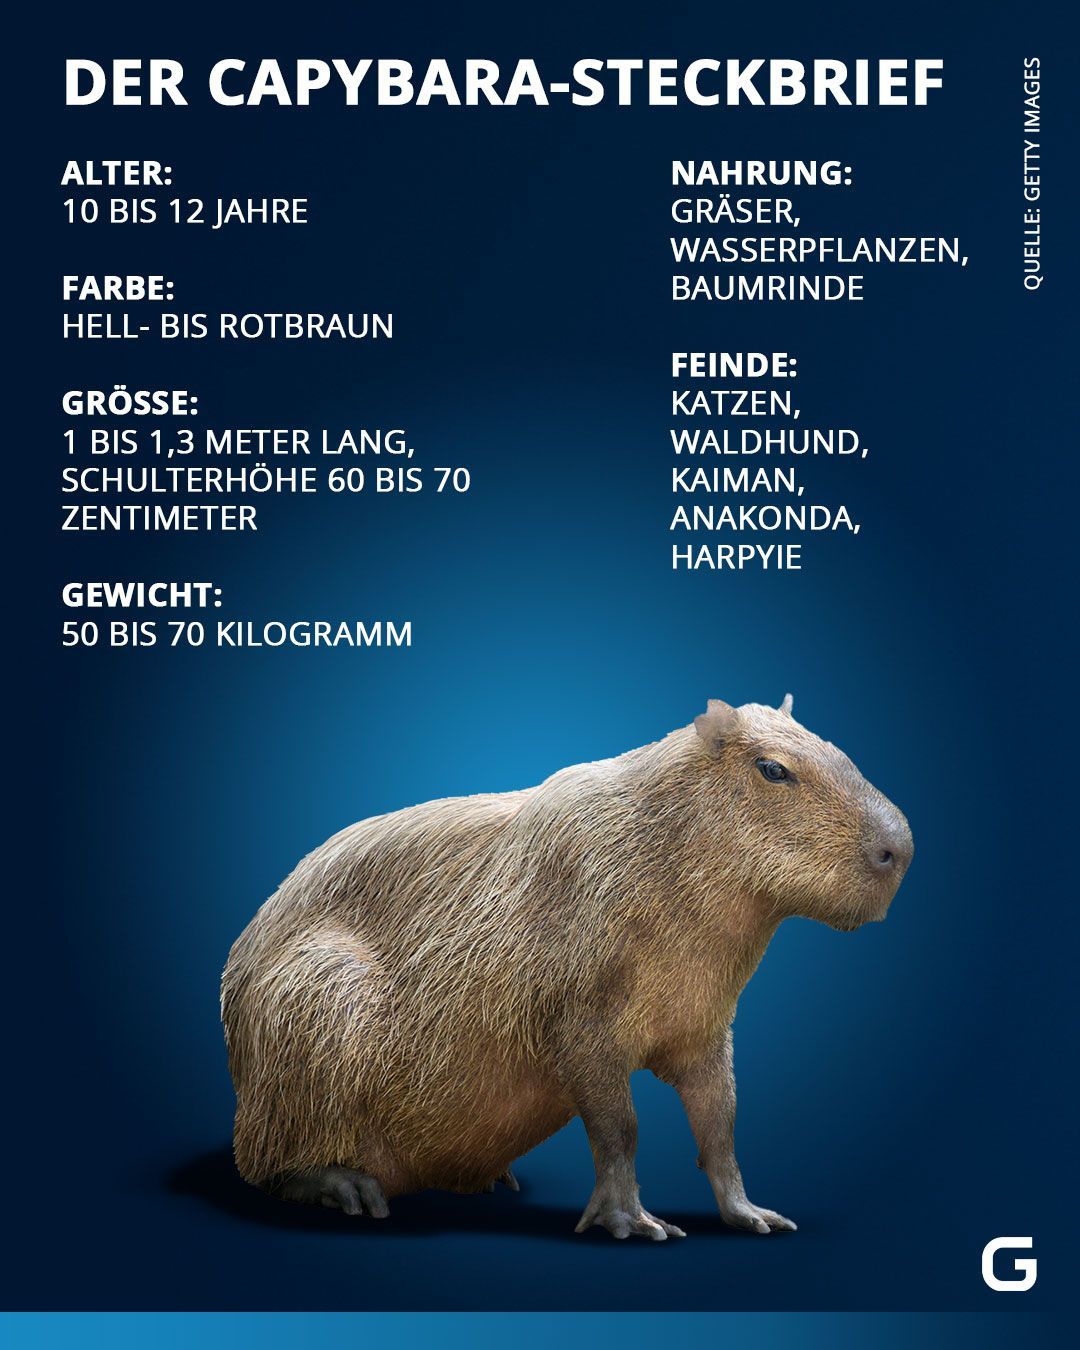 Steckbrief Capybara: Alter, Farbe, Größe, Gewicht, Nahrung und Feinde des Capybara. 